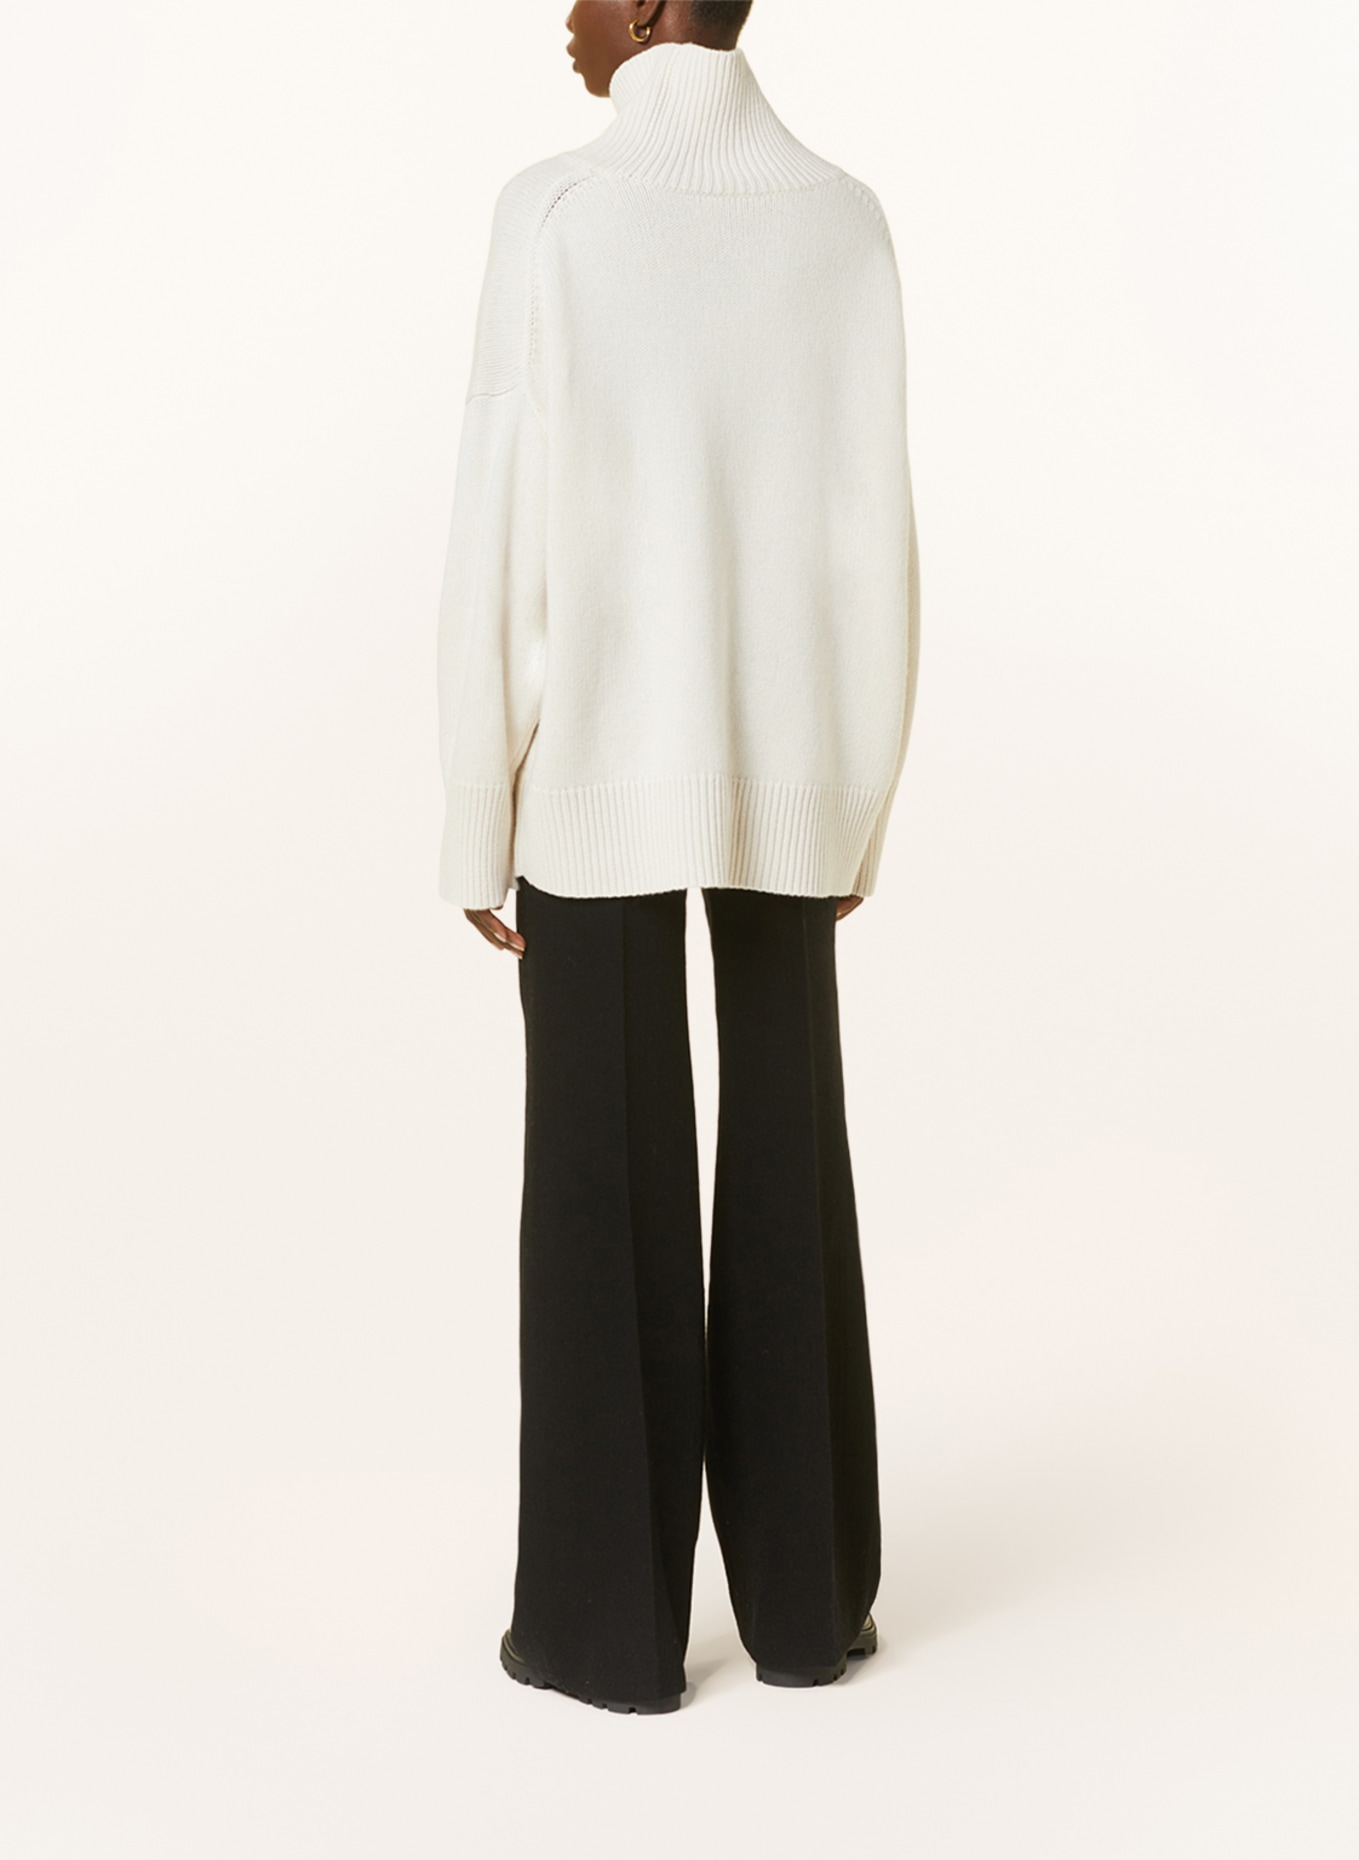 Chloé Turtleneck sweater in cashmere, Color: ECRU (Image 3)